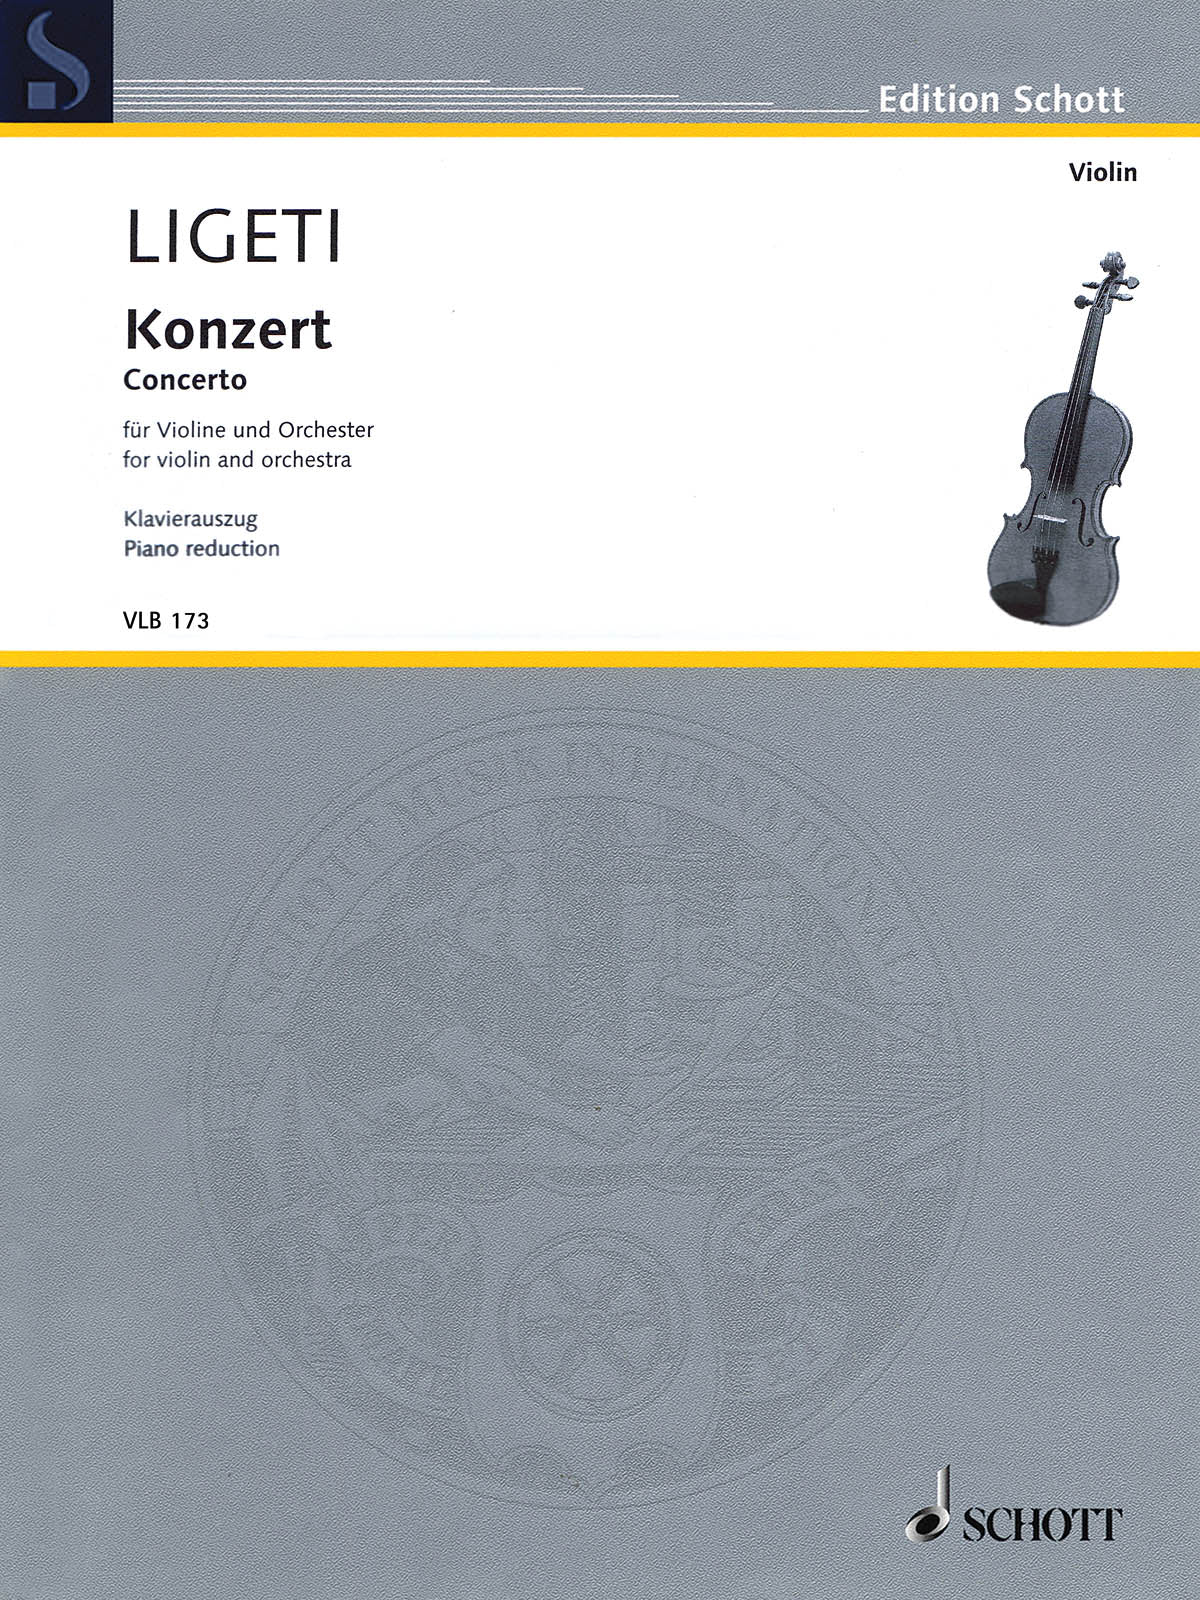 Ligeti: Violin Concerto